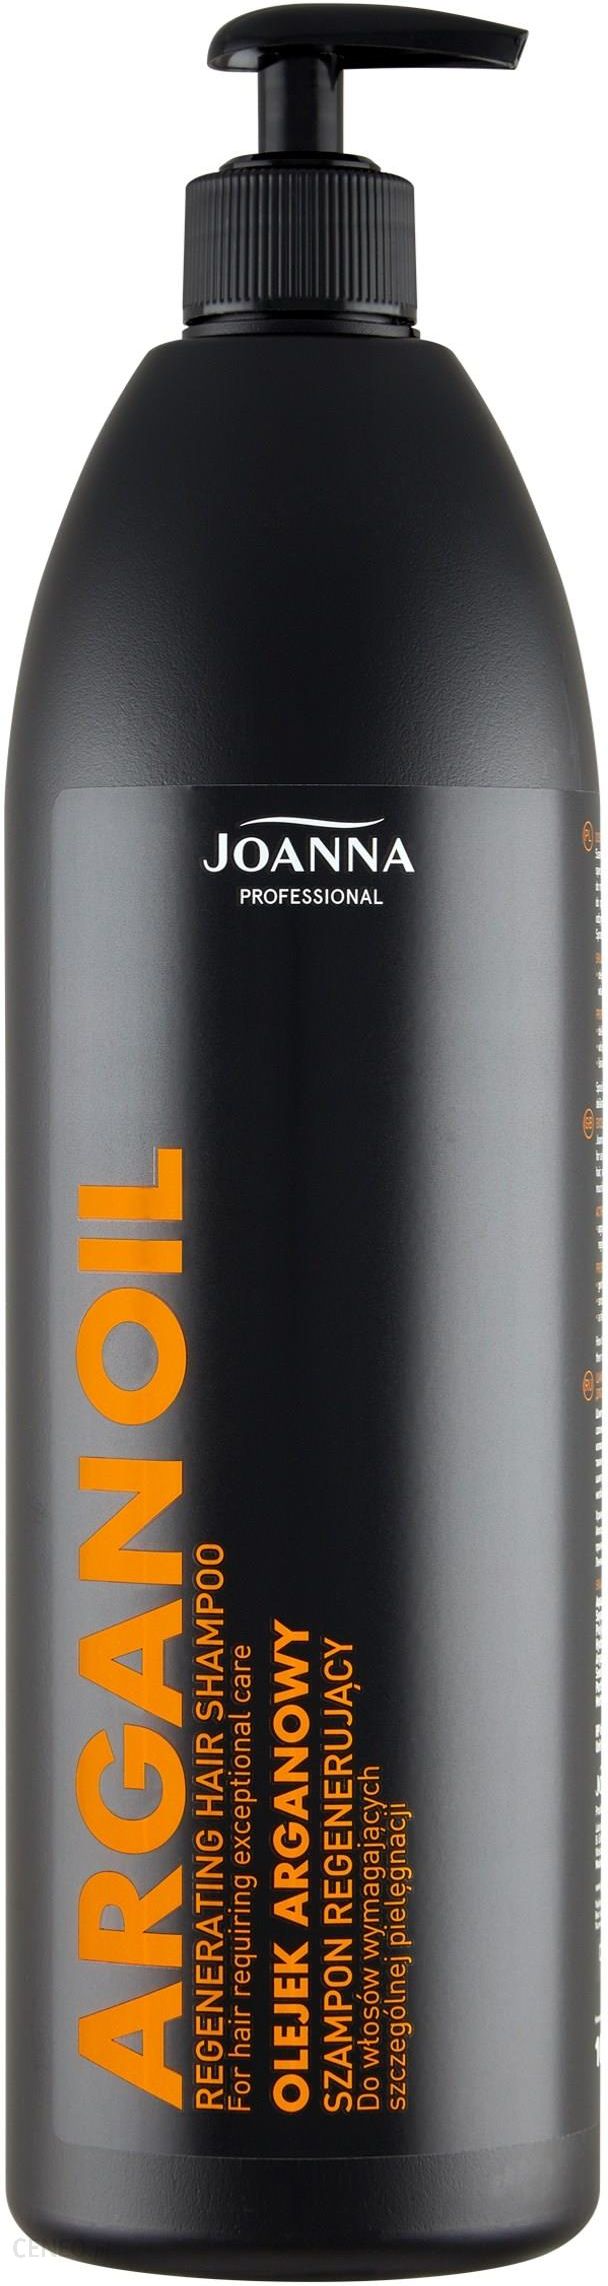 joanna professional szampon do włosów odbudowujący z keratyną opinie